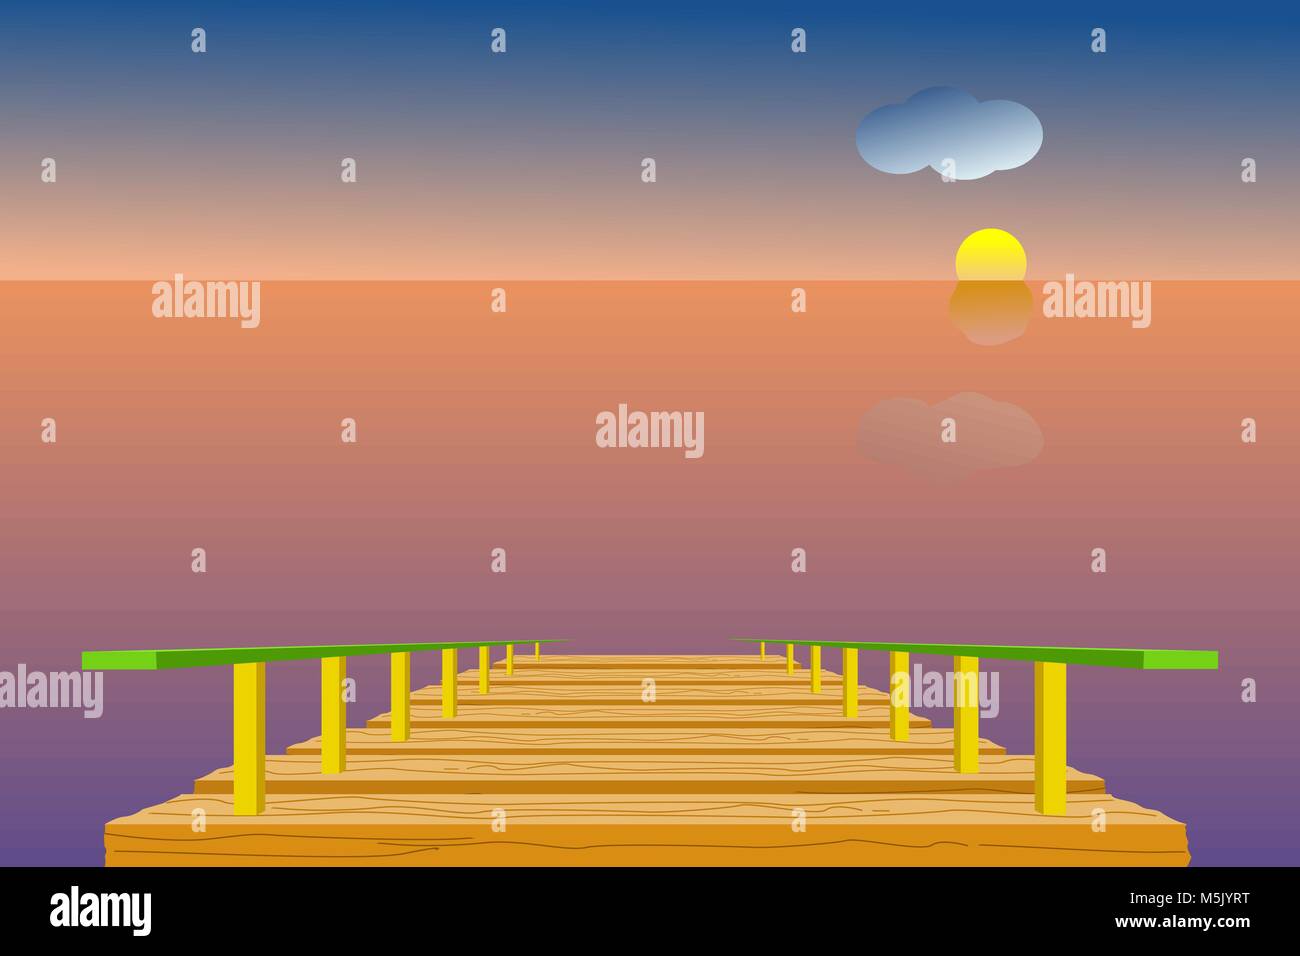 Il molo di legno in mare con il cielo, il sole, le nuvole e la linea di orizzonte; durante il crepuscolo del tempo. Illustrazione Vettoriale in design piatto. Illustrazione Vettoriale